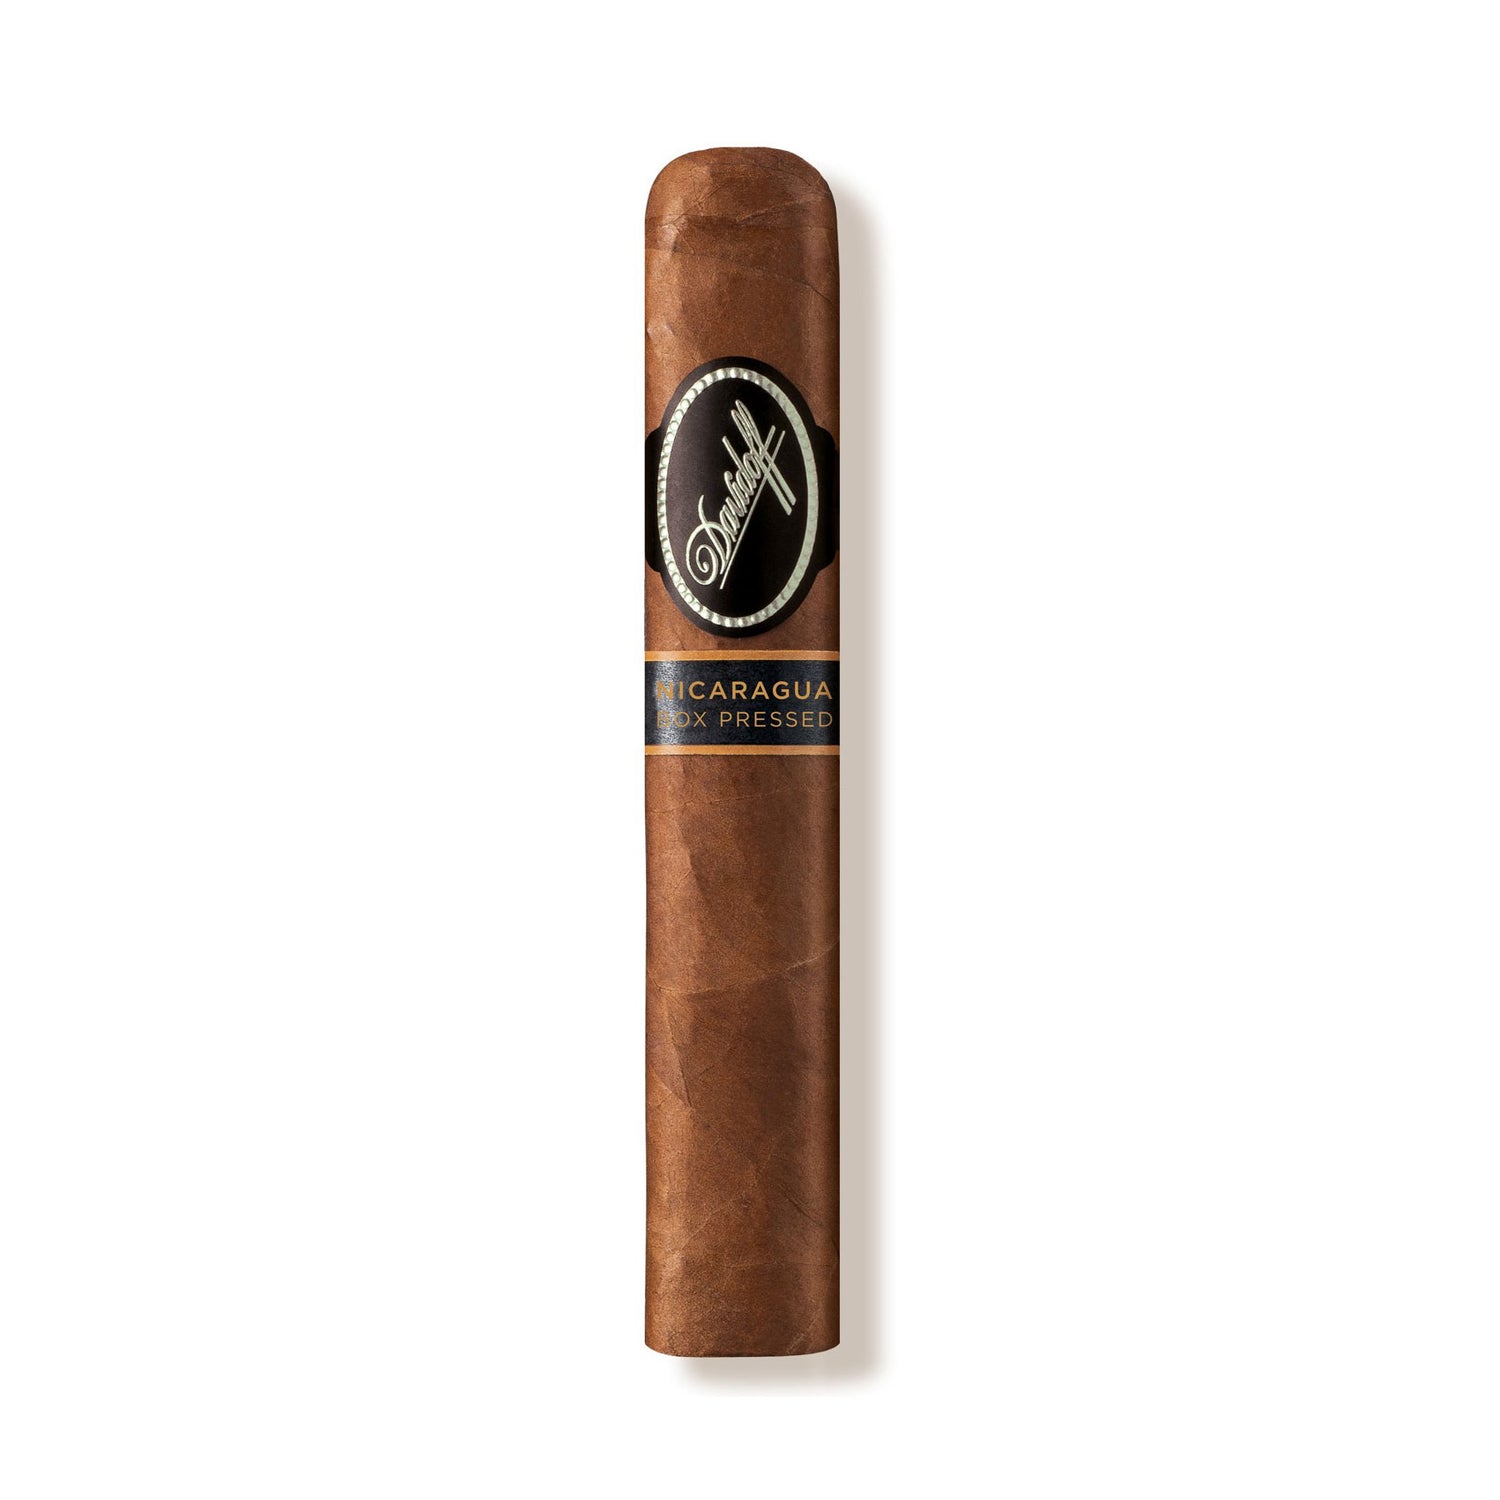 Davidoff Nicaragua Box Press Robusto 5 x 48 Single Cigar